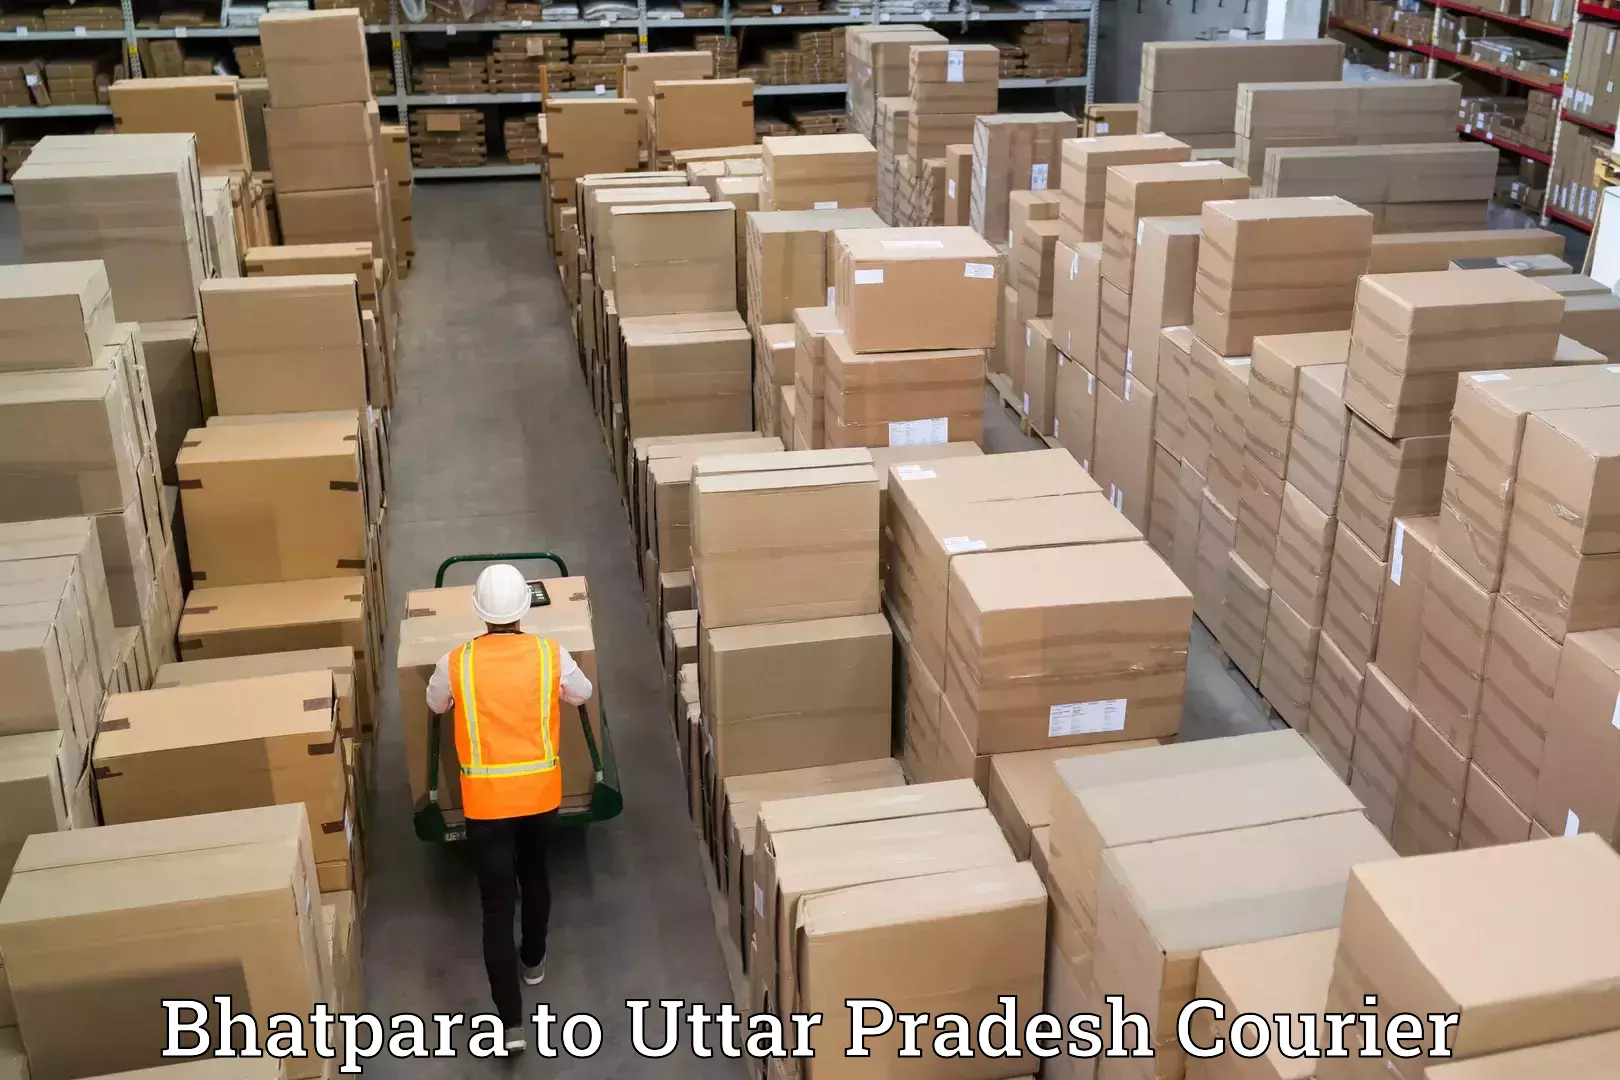 Quality relocation services Bhatpara to Shravasti